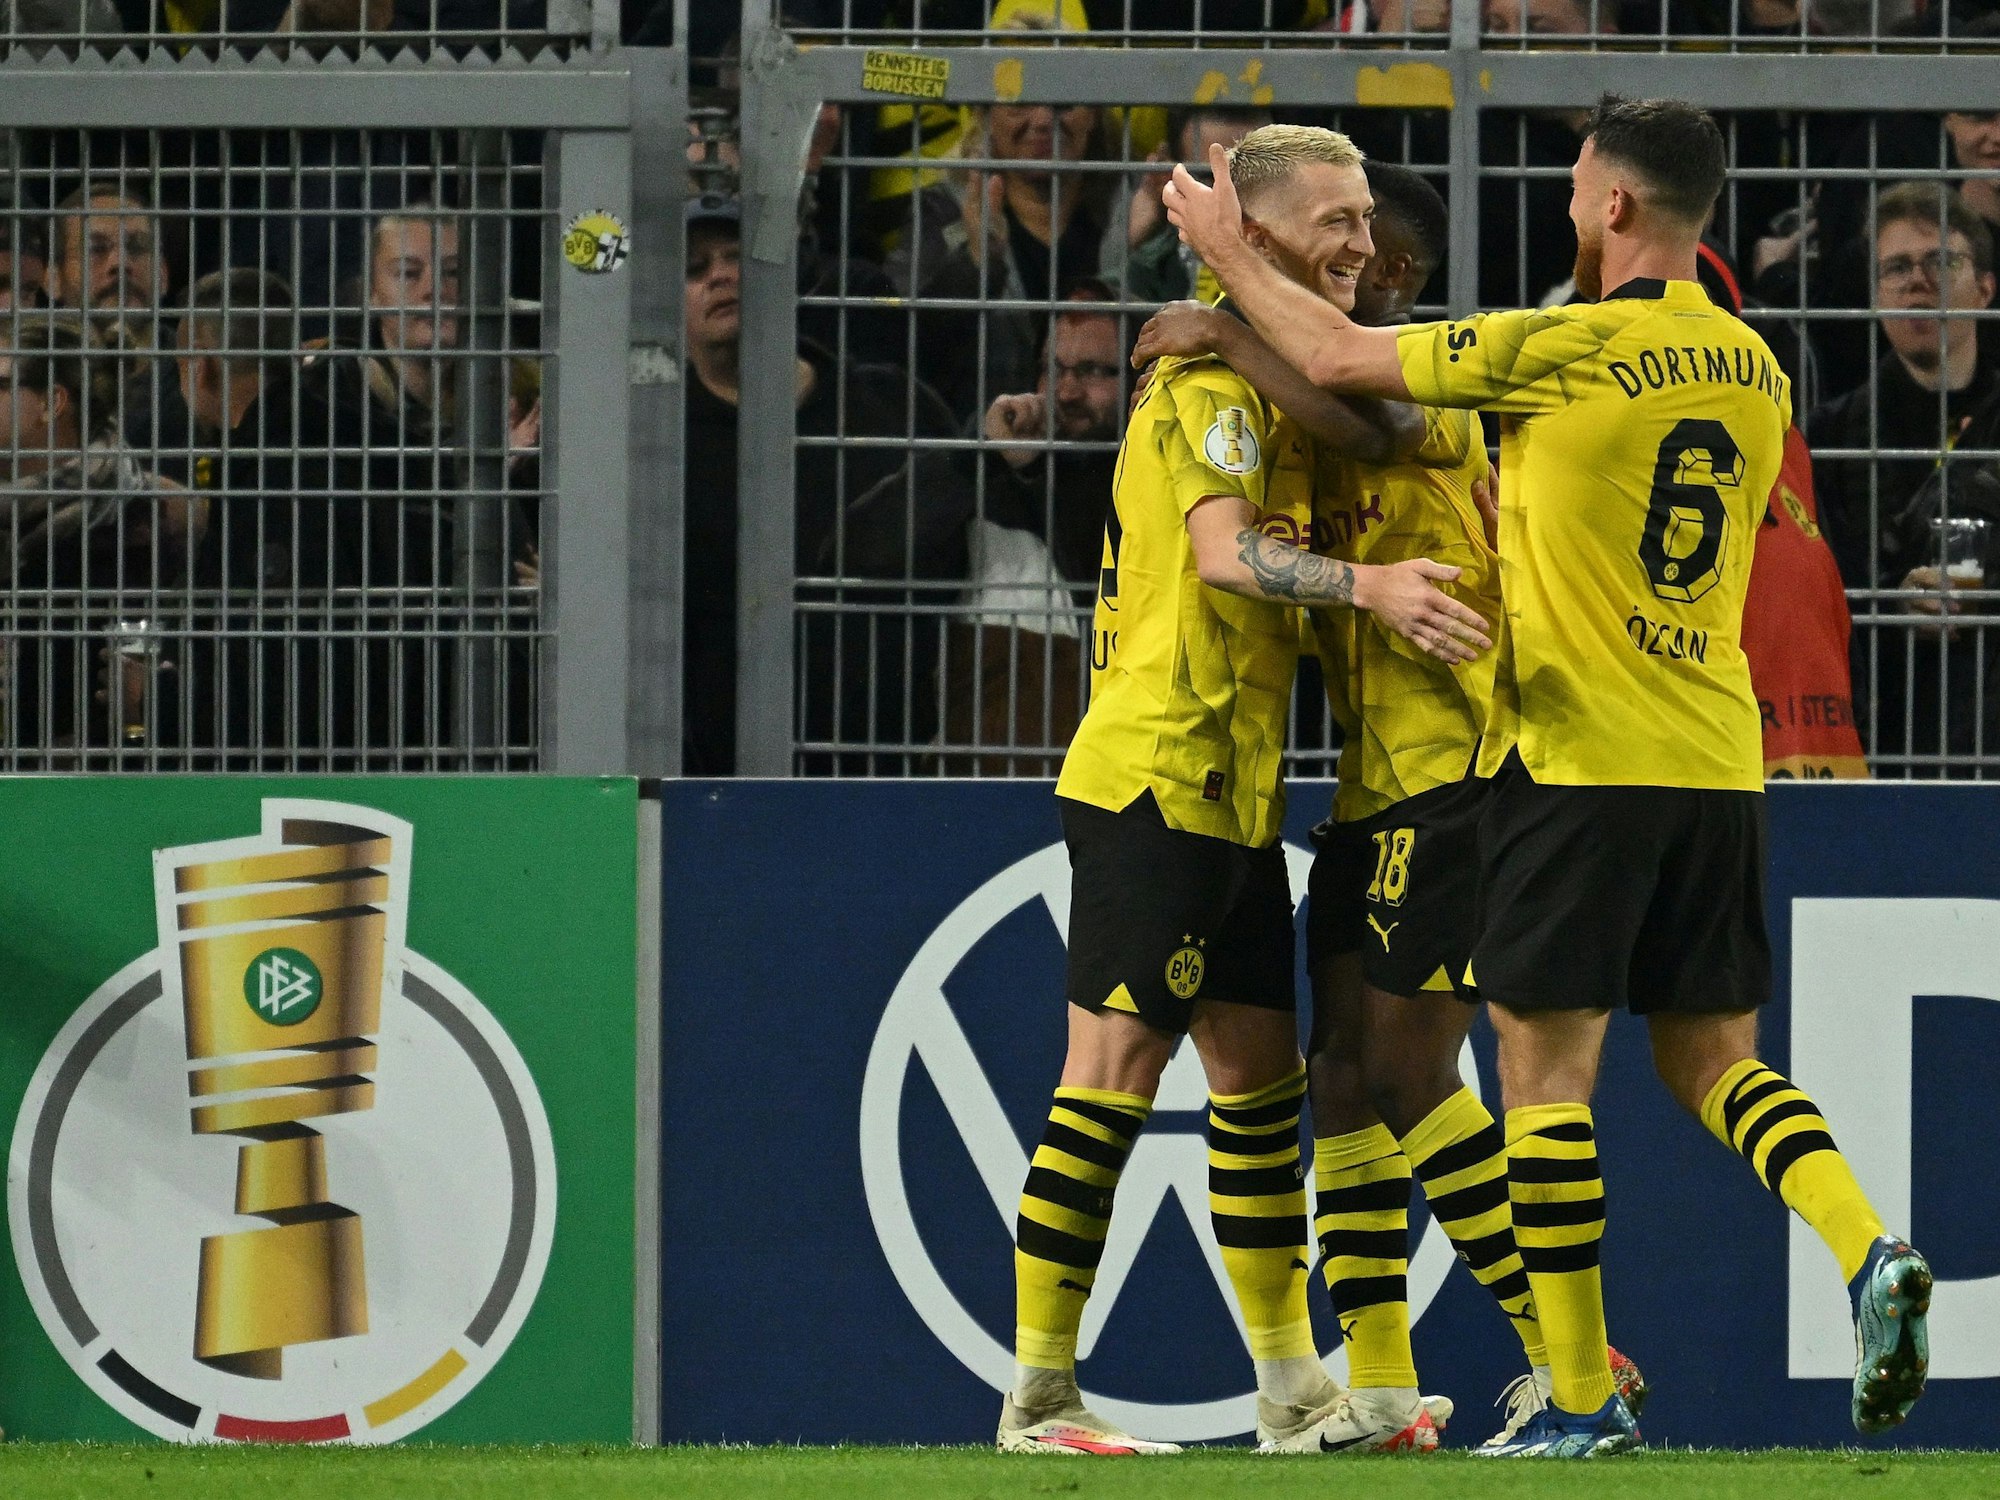 Die Spieler von Borussia Dortmund jubeln über ein Tor gegen die TSG Hoffenheim.